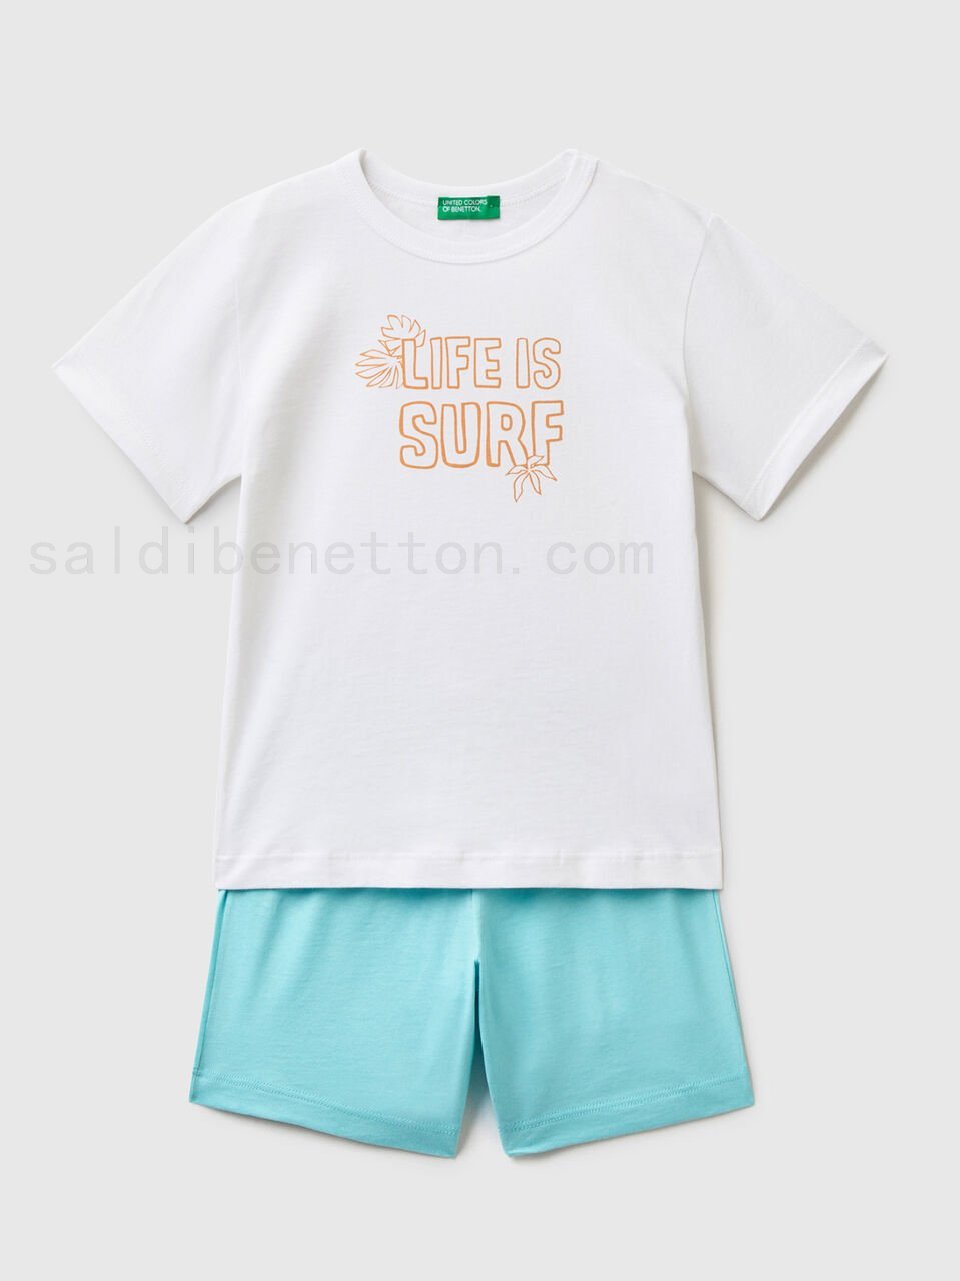 benetton shop online Completo maglietta e shorts Classiche